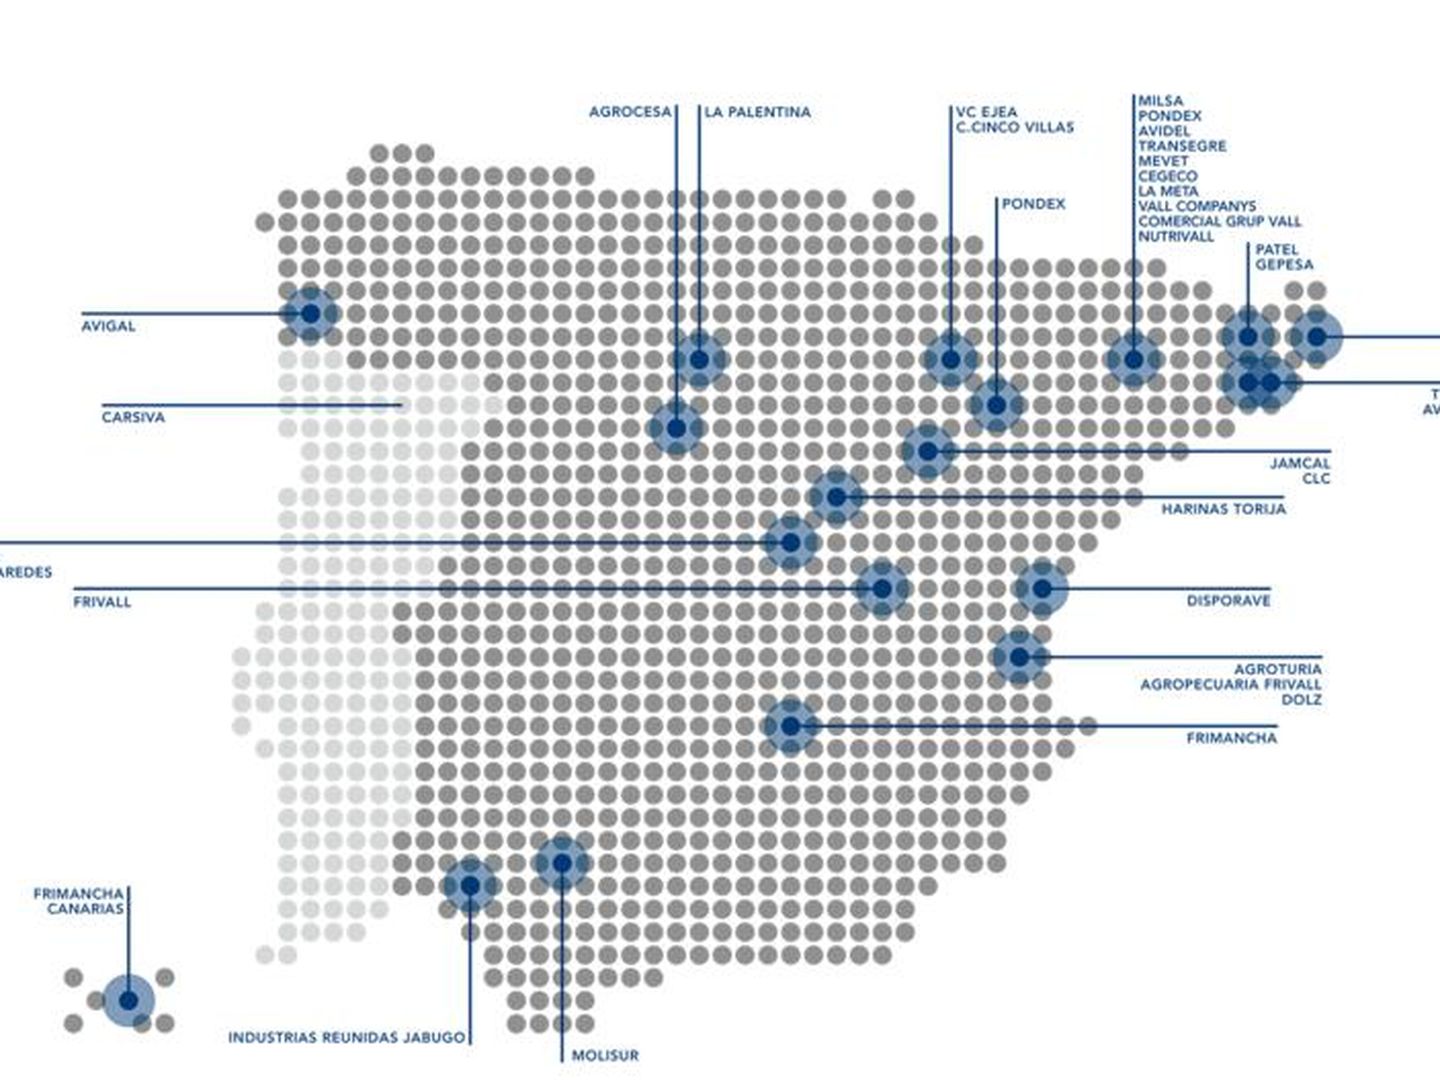 Mapa de las filiales del Grupo Vall Companys en España